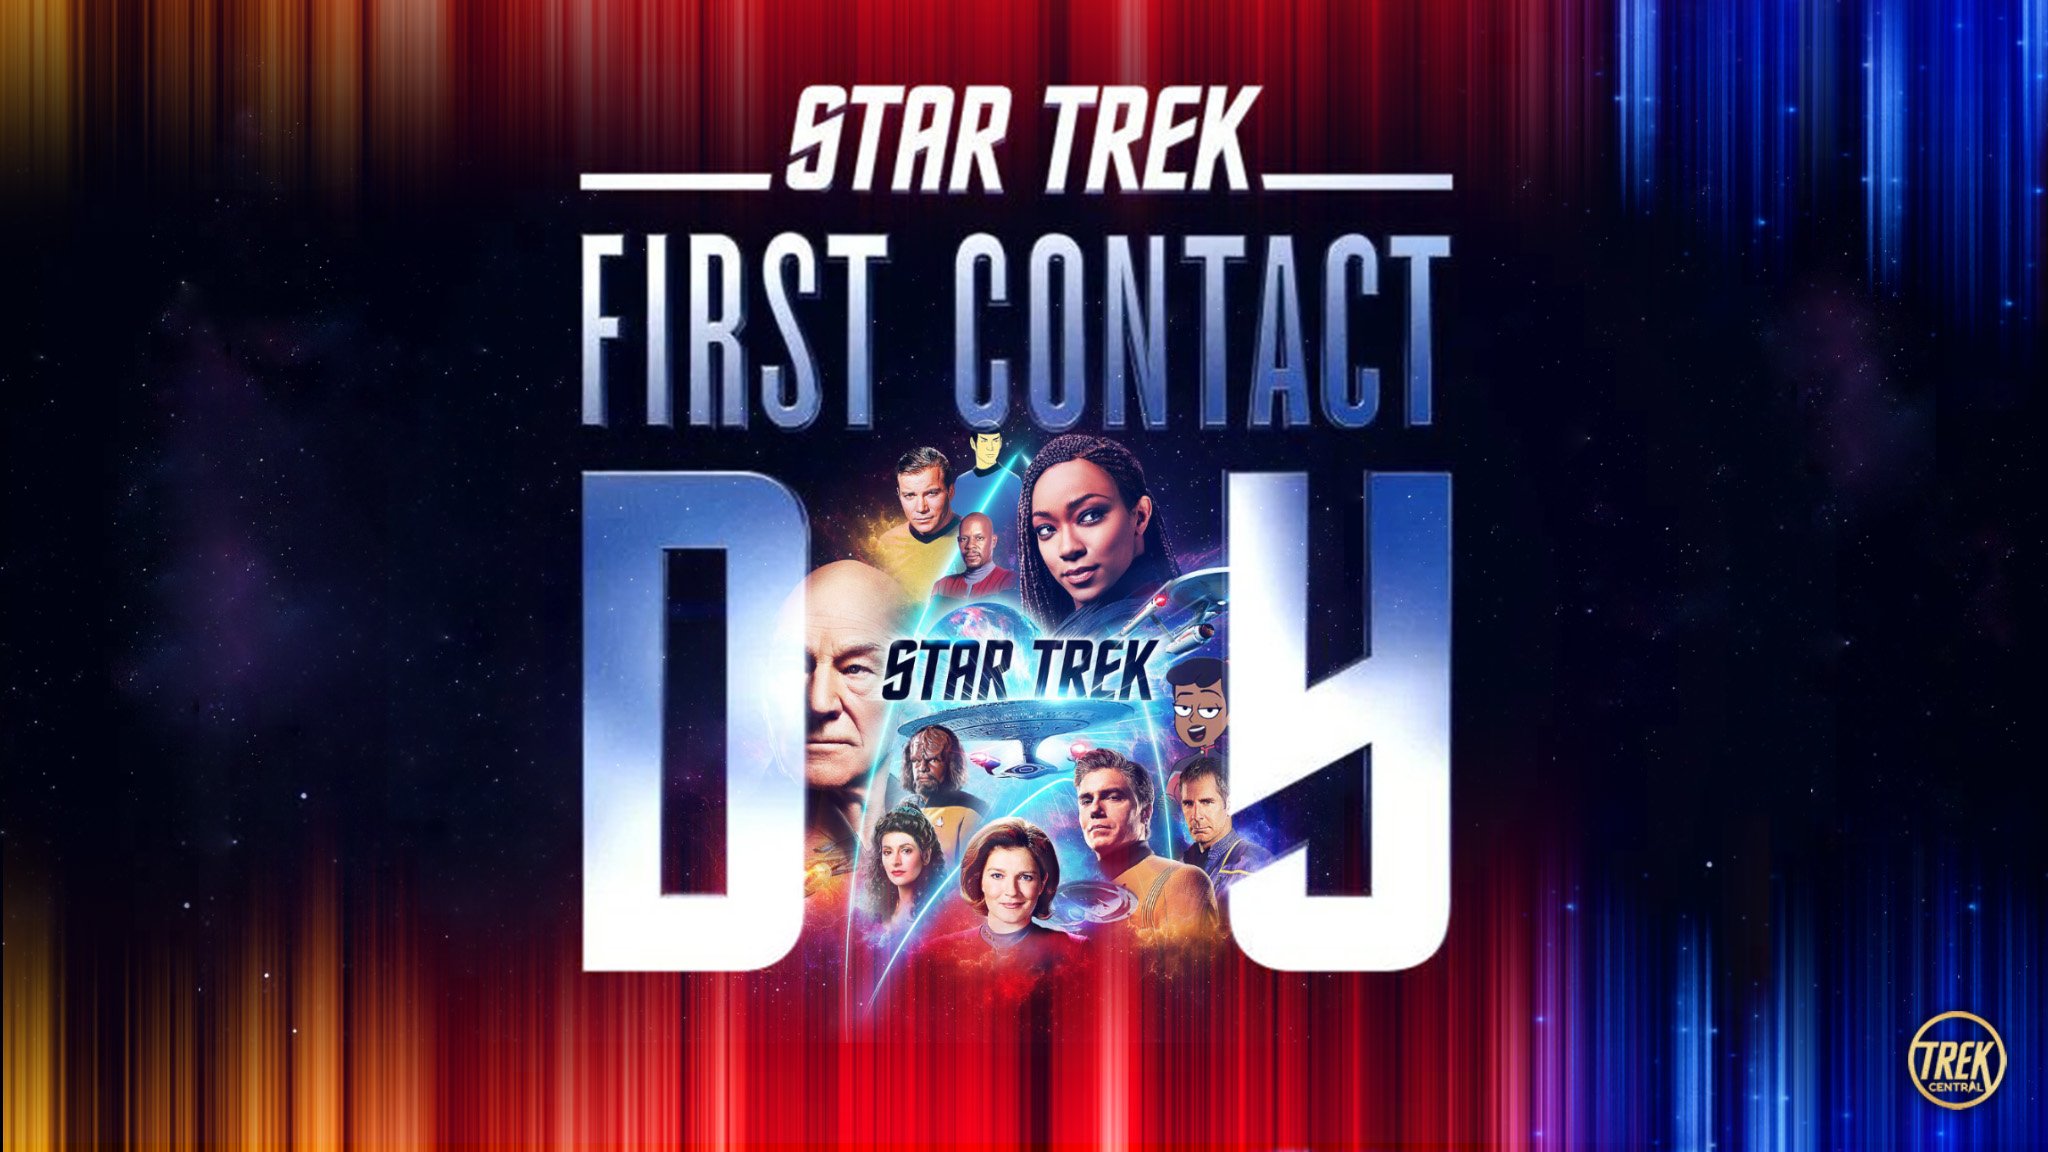 Star Trek First Contact Day Celebration Schedule Trek Central